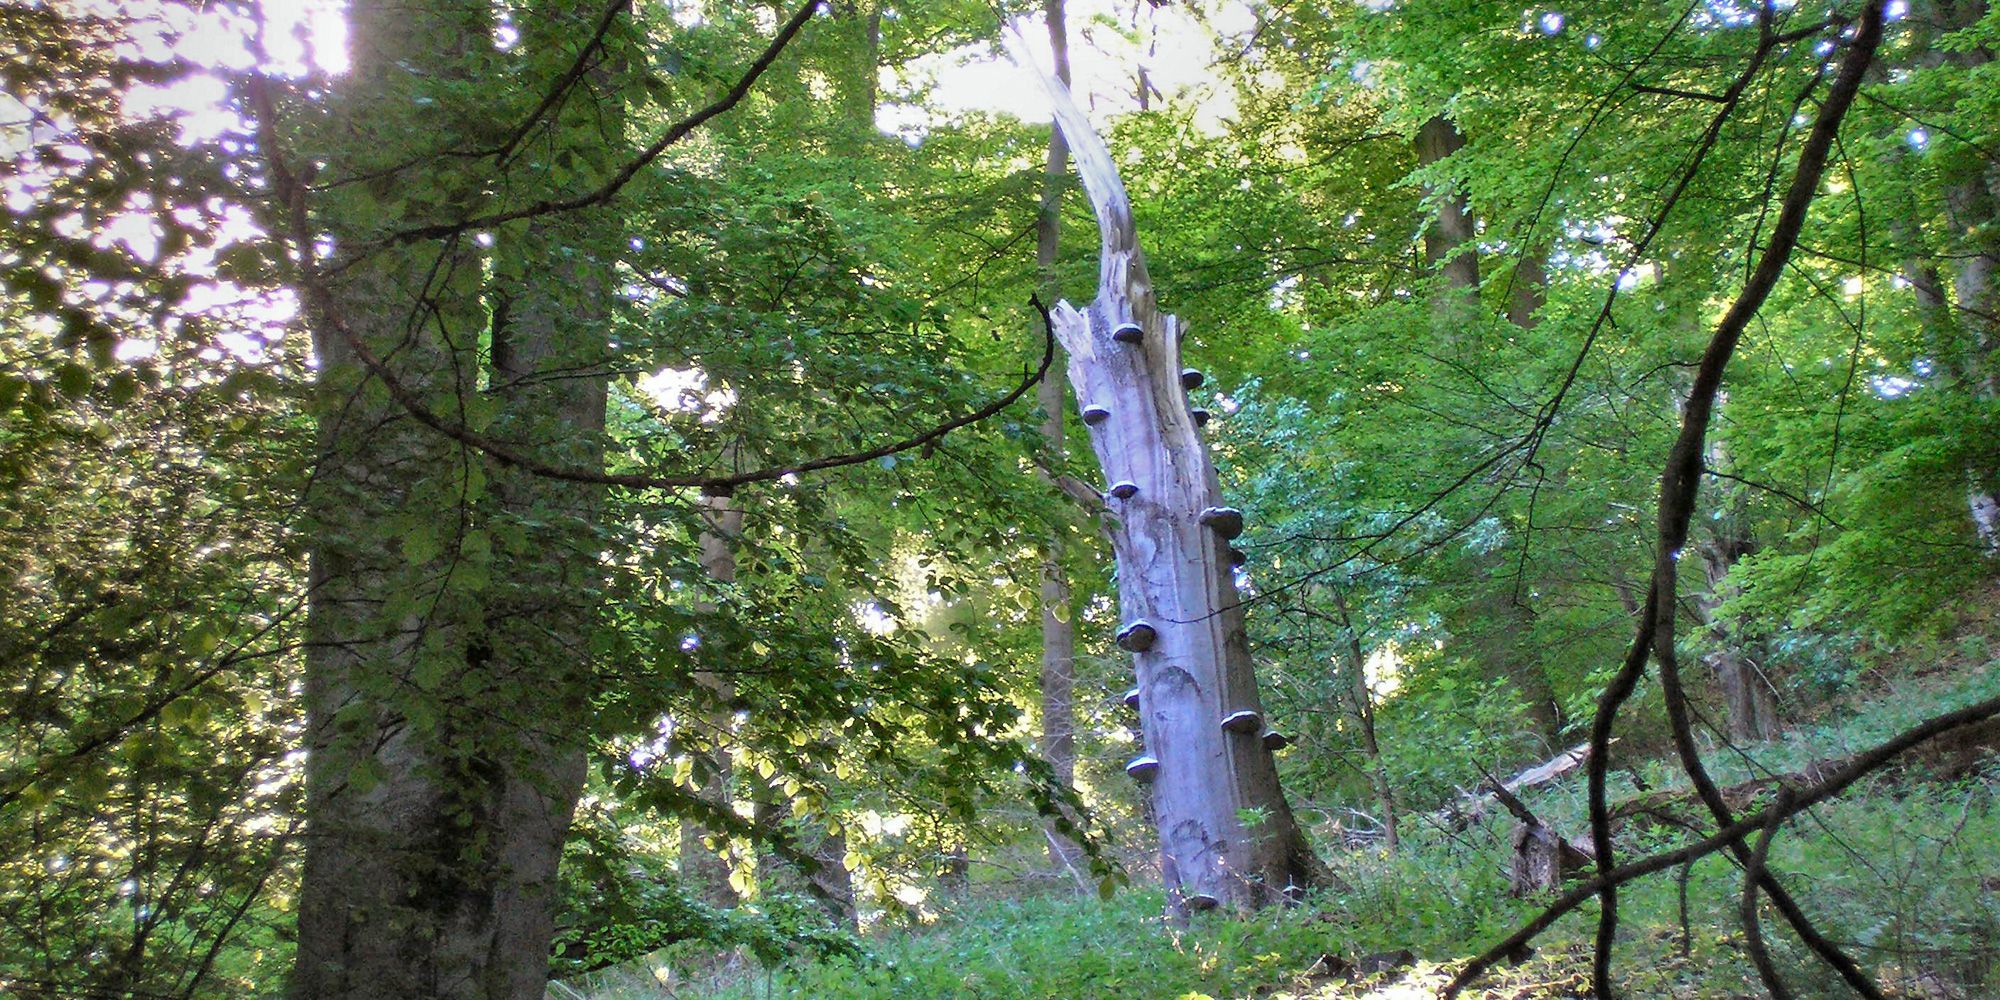 In den Berliner Wäldern finden sich viele abgestorbene Bäume, die als Lebensraum für unzählige Lebewesen dienen.